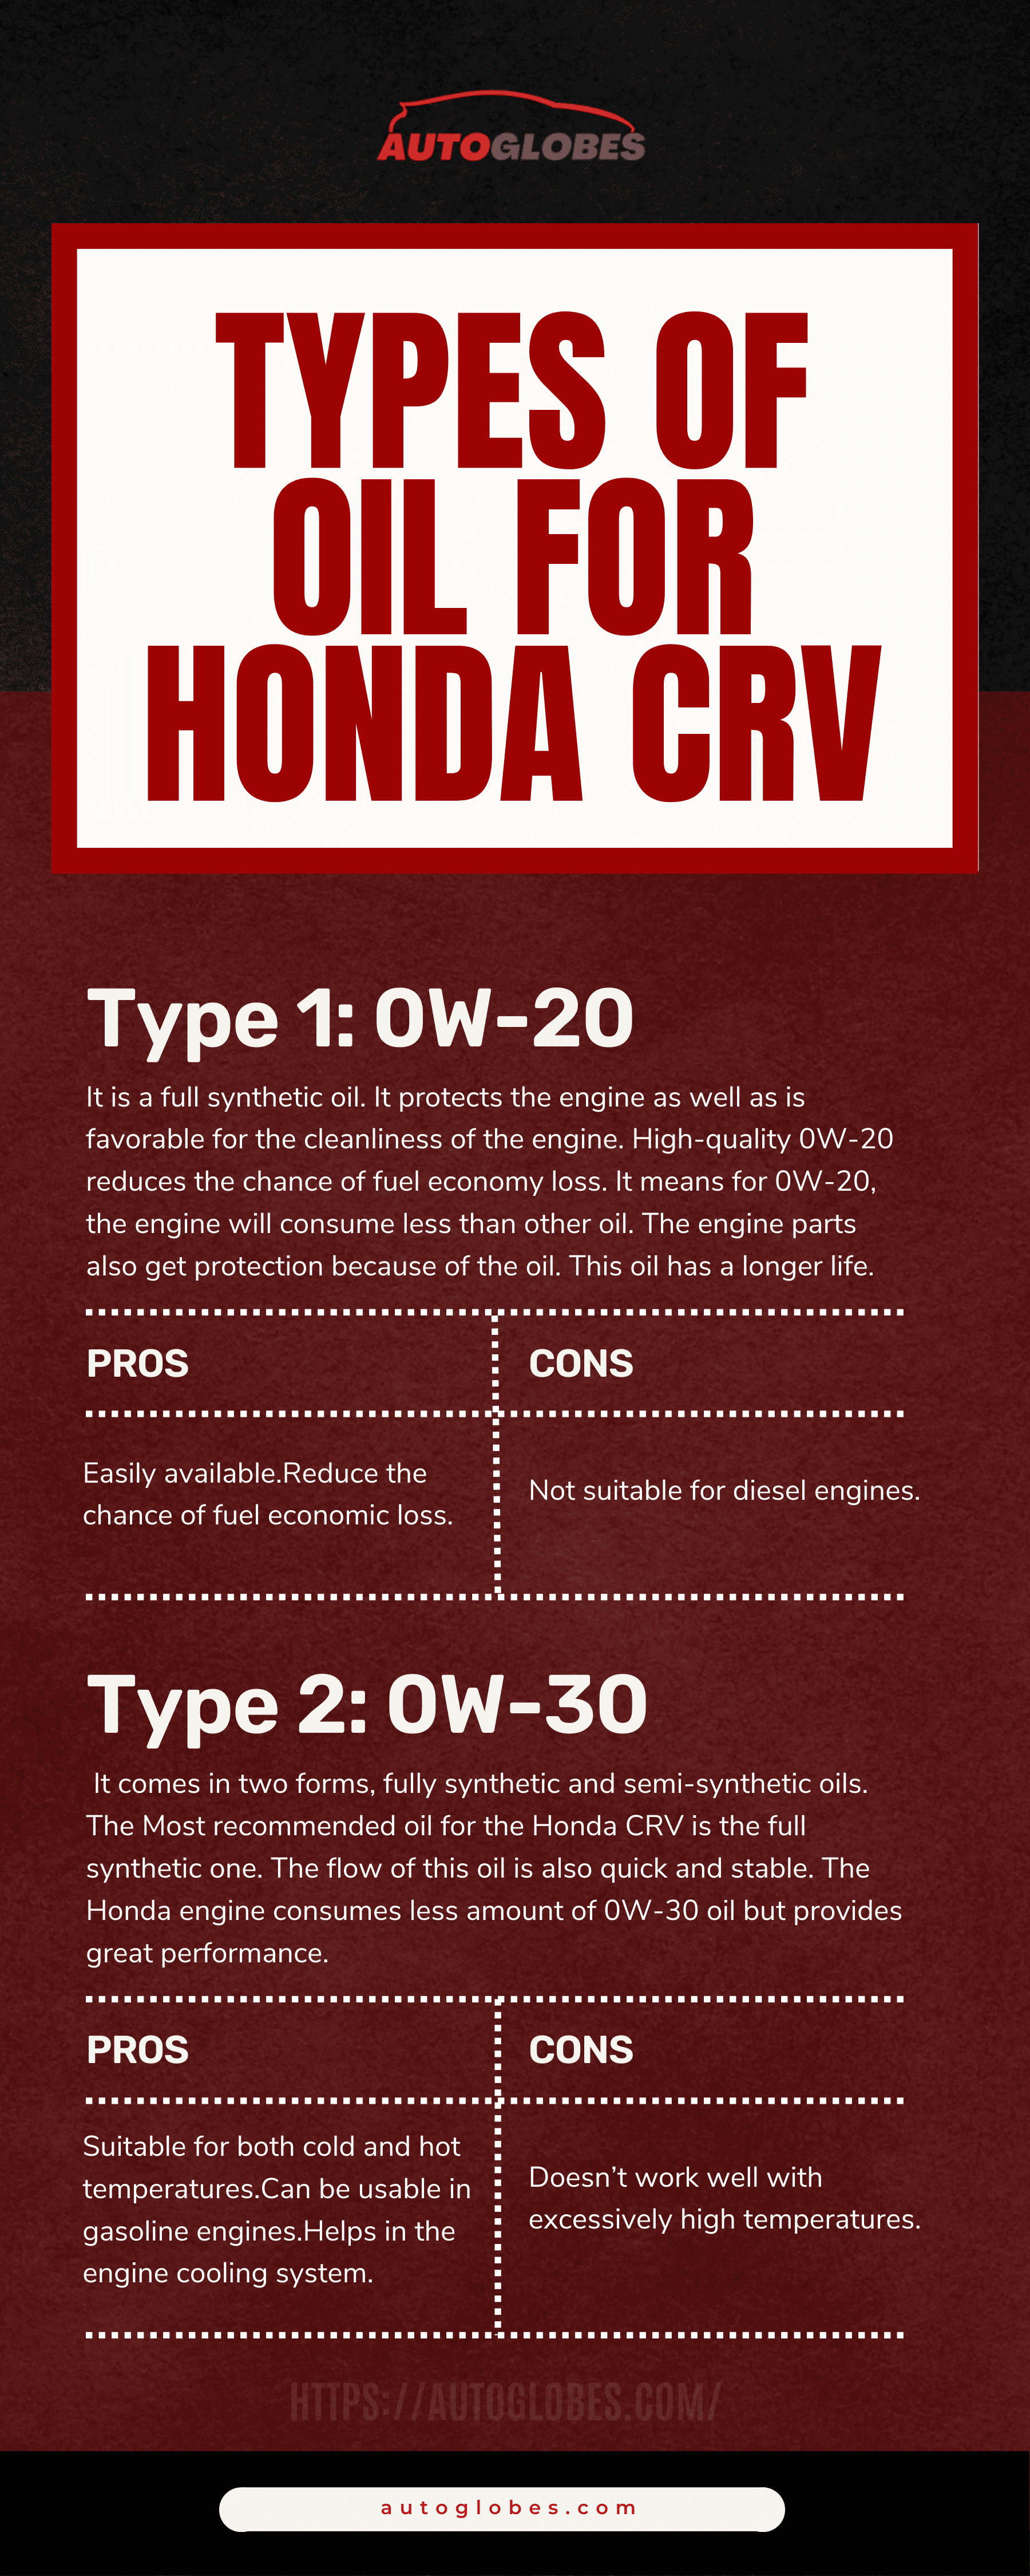 Types of Oil for Honda CRV Infographic